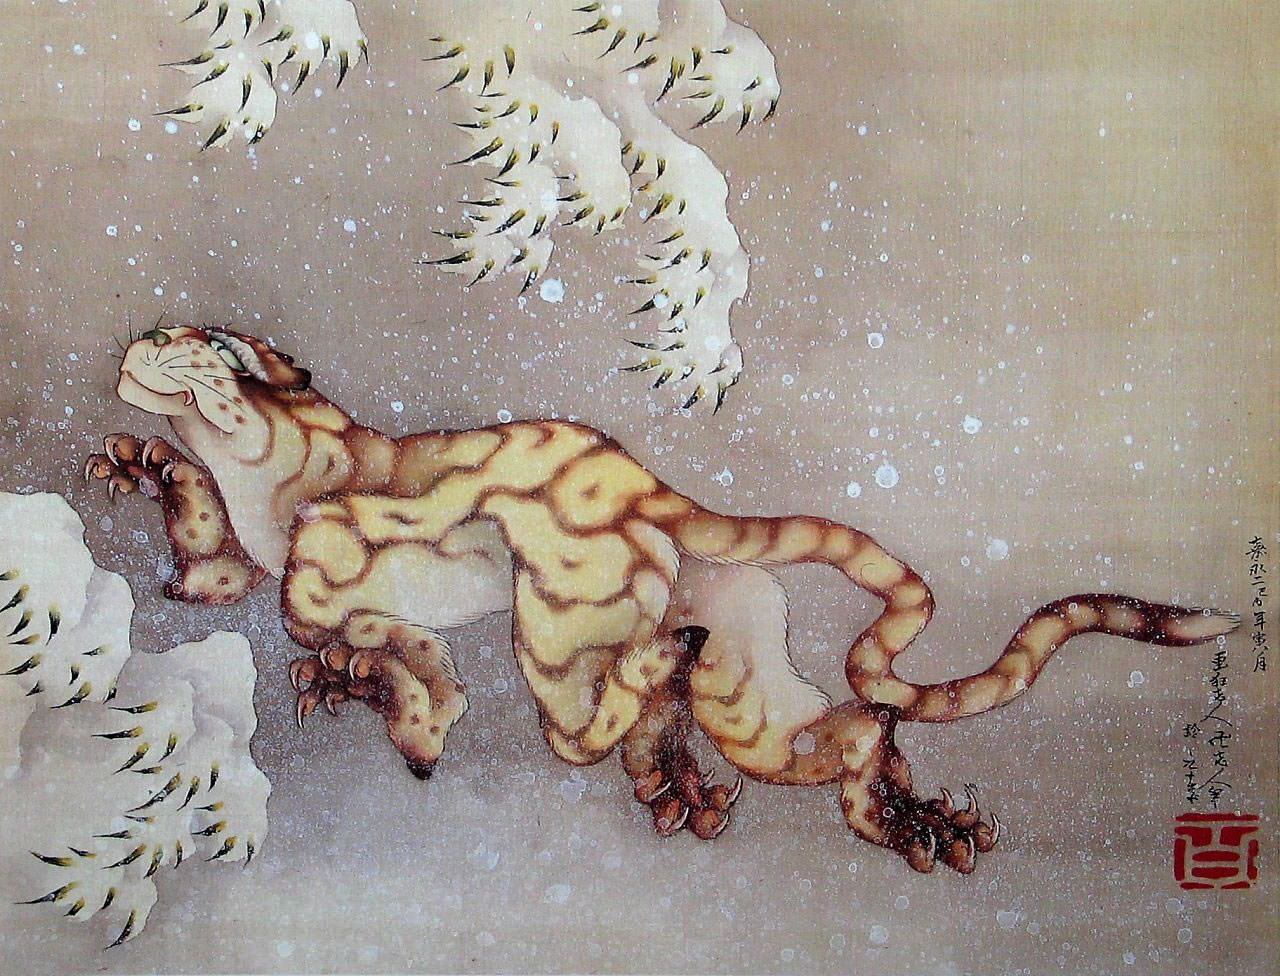 نمر في الثلج by Katsushika Hokusai - 1849 